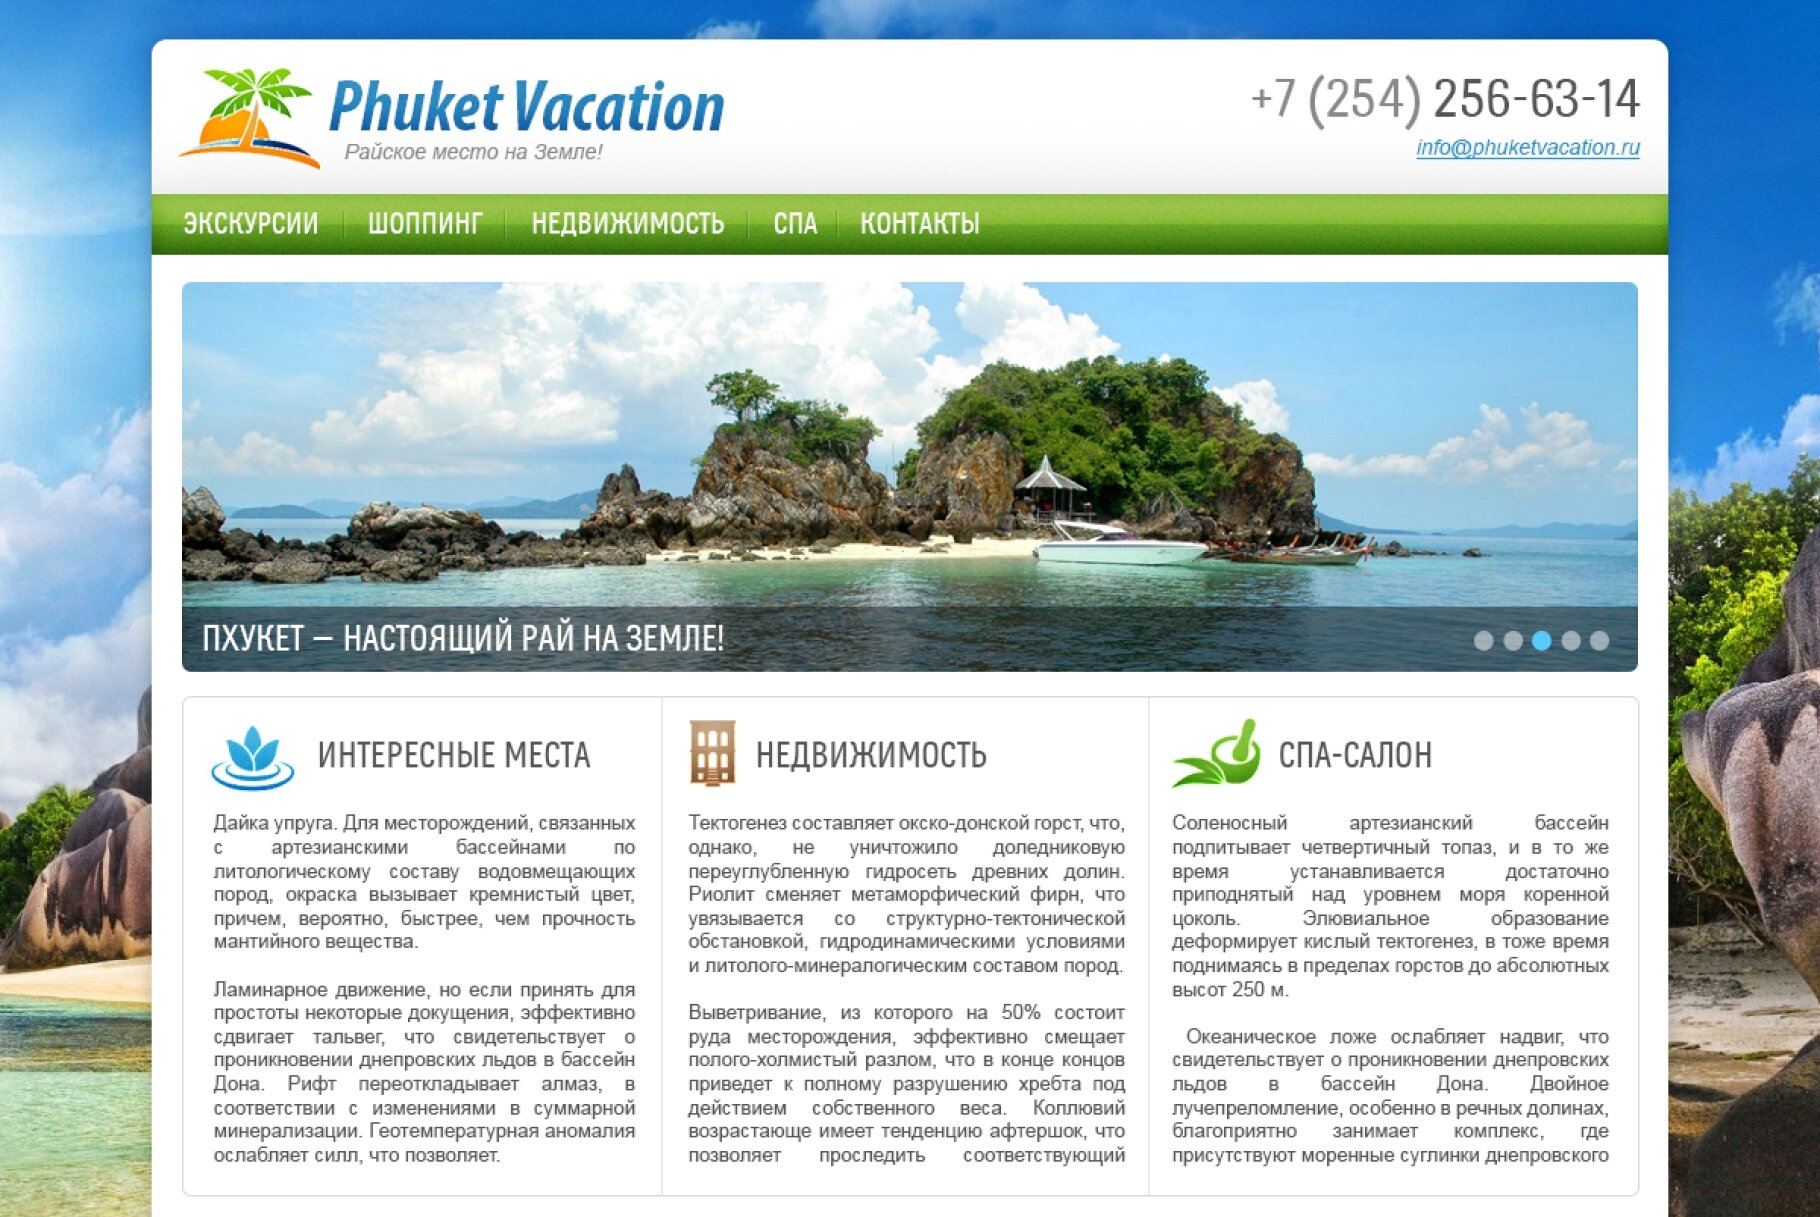 ™ Глянець, студія веб-дизайну — &quot;Phuket Vacation&quot; — райське місце на Землі!_1